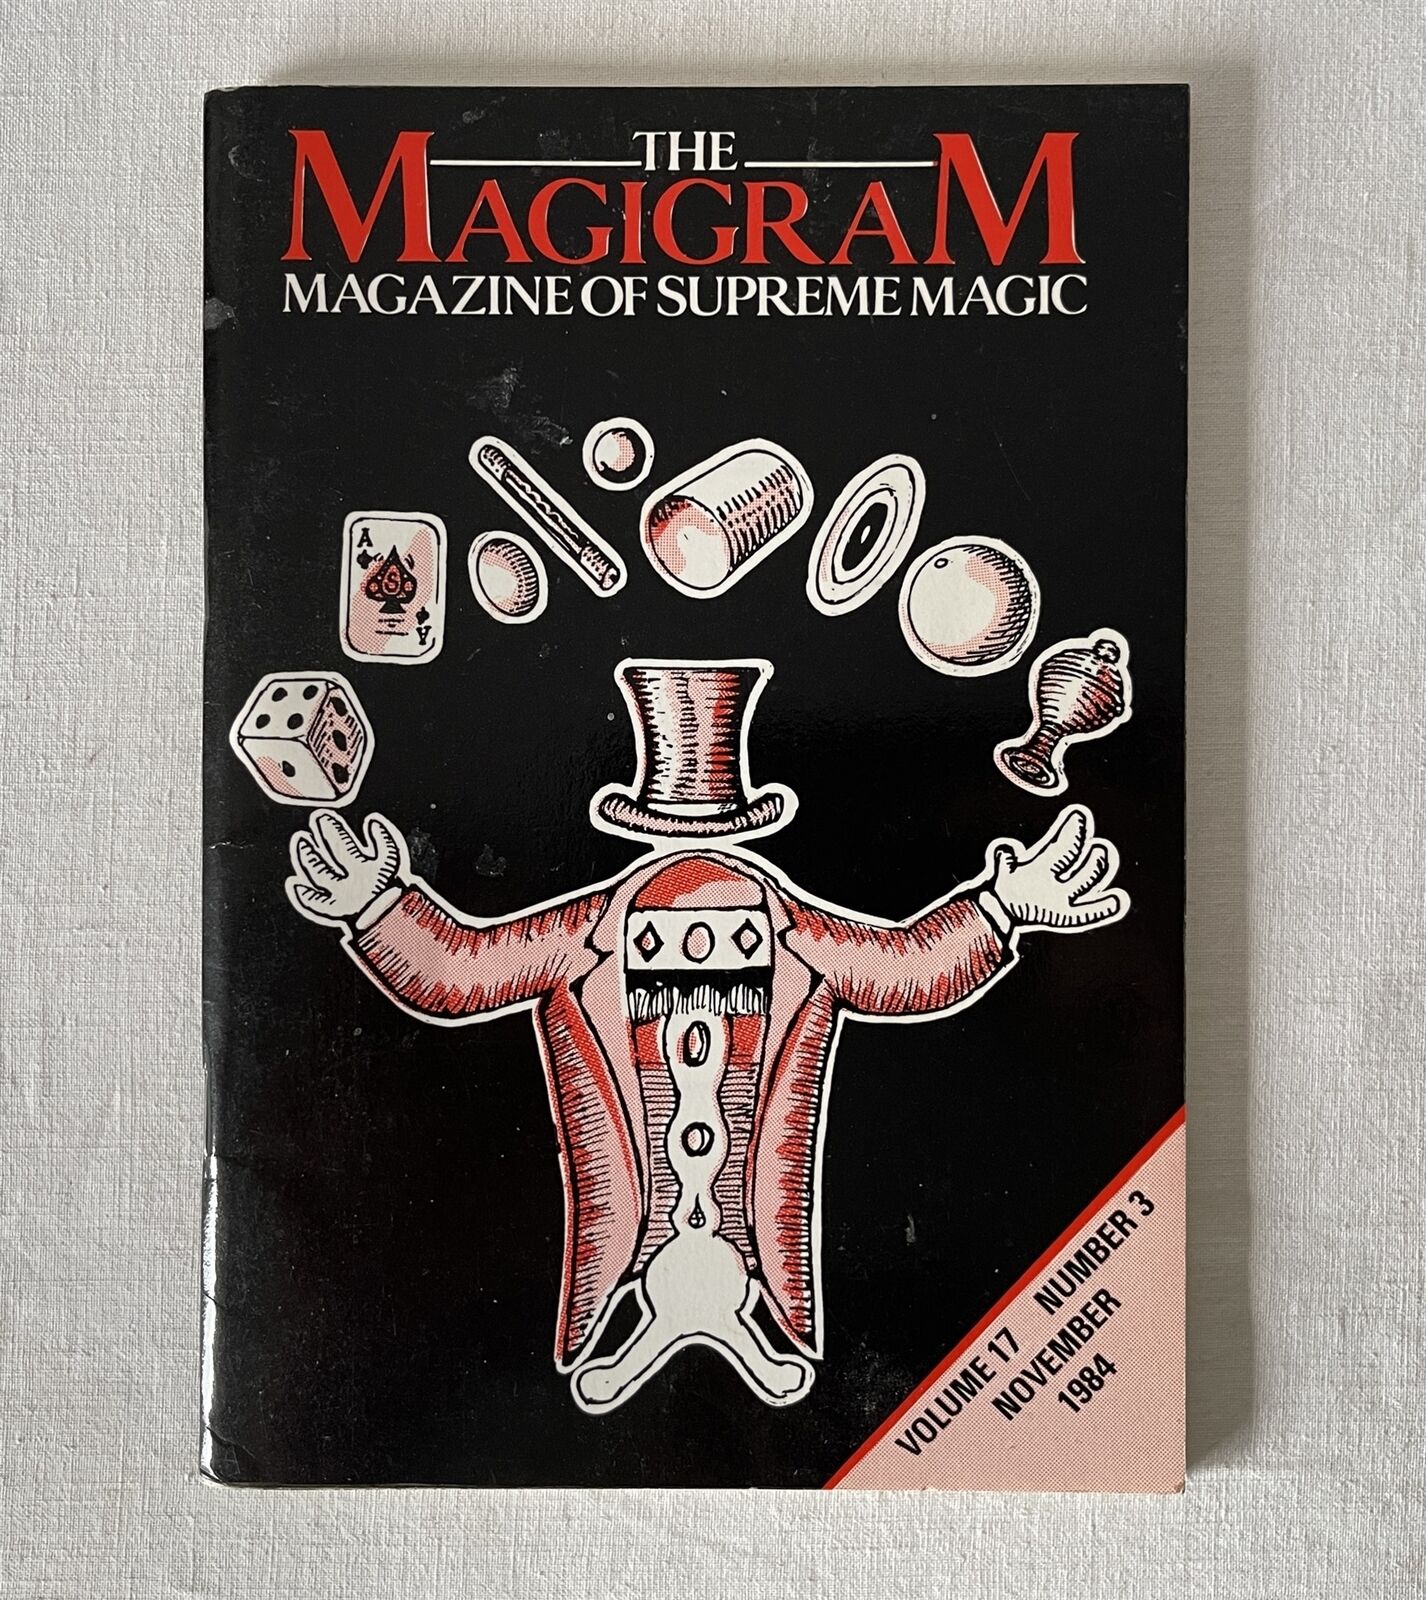 Vintage MAGIGRAM Magic Magazine of Supreme Magic Volume 17 No. 3 November 1984